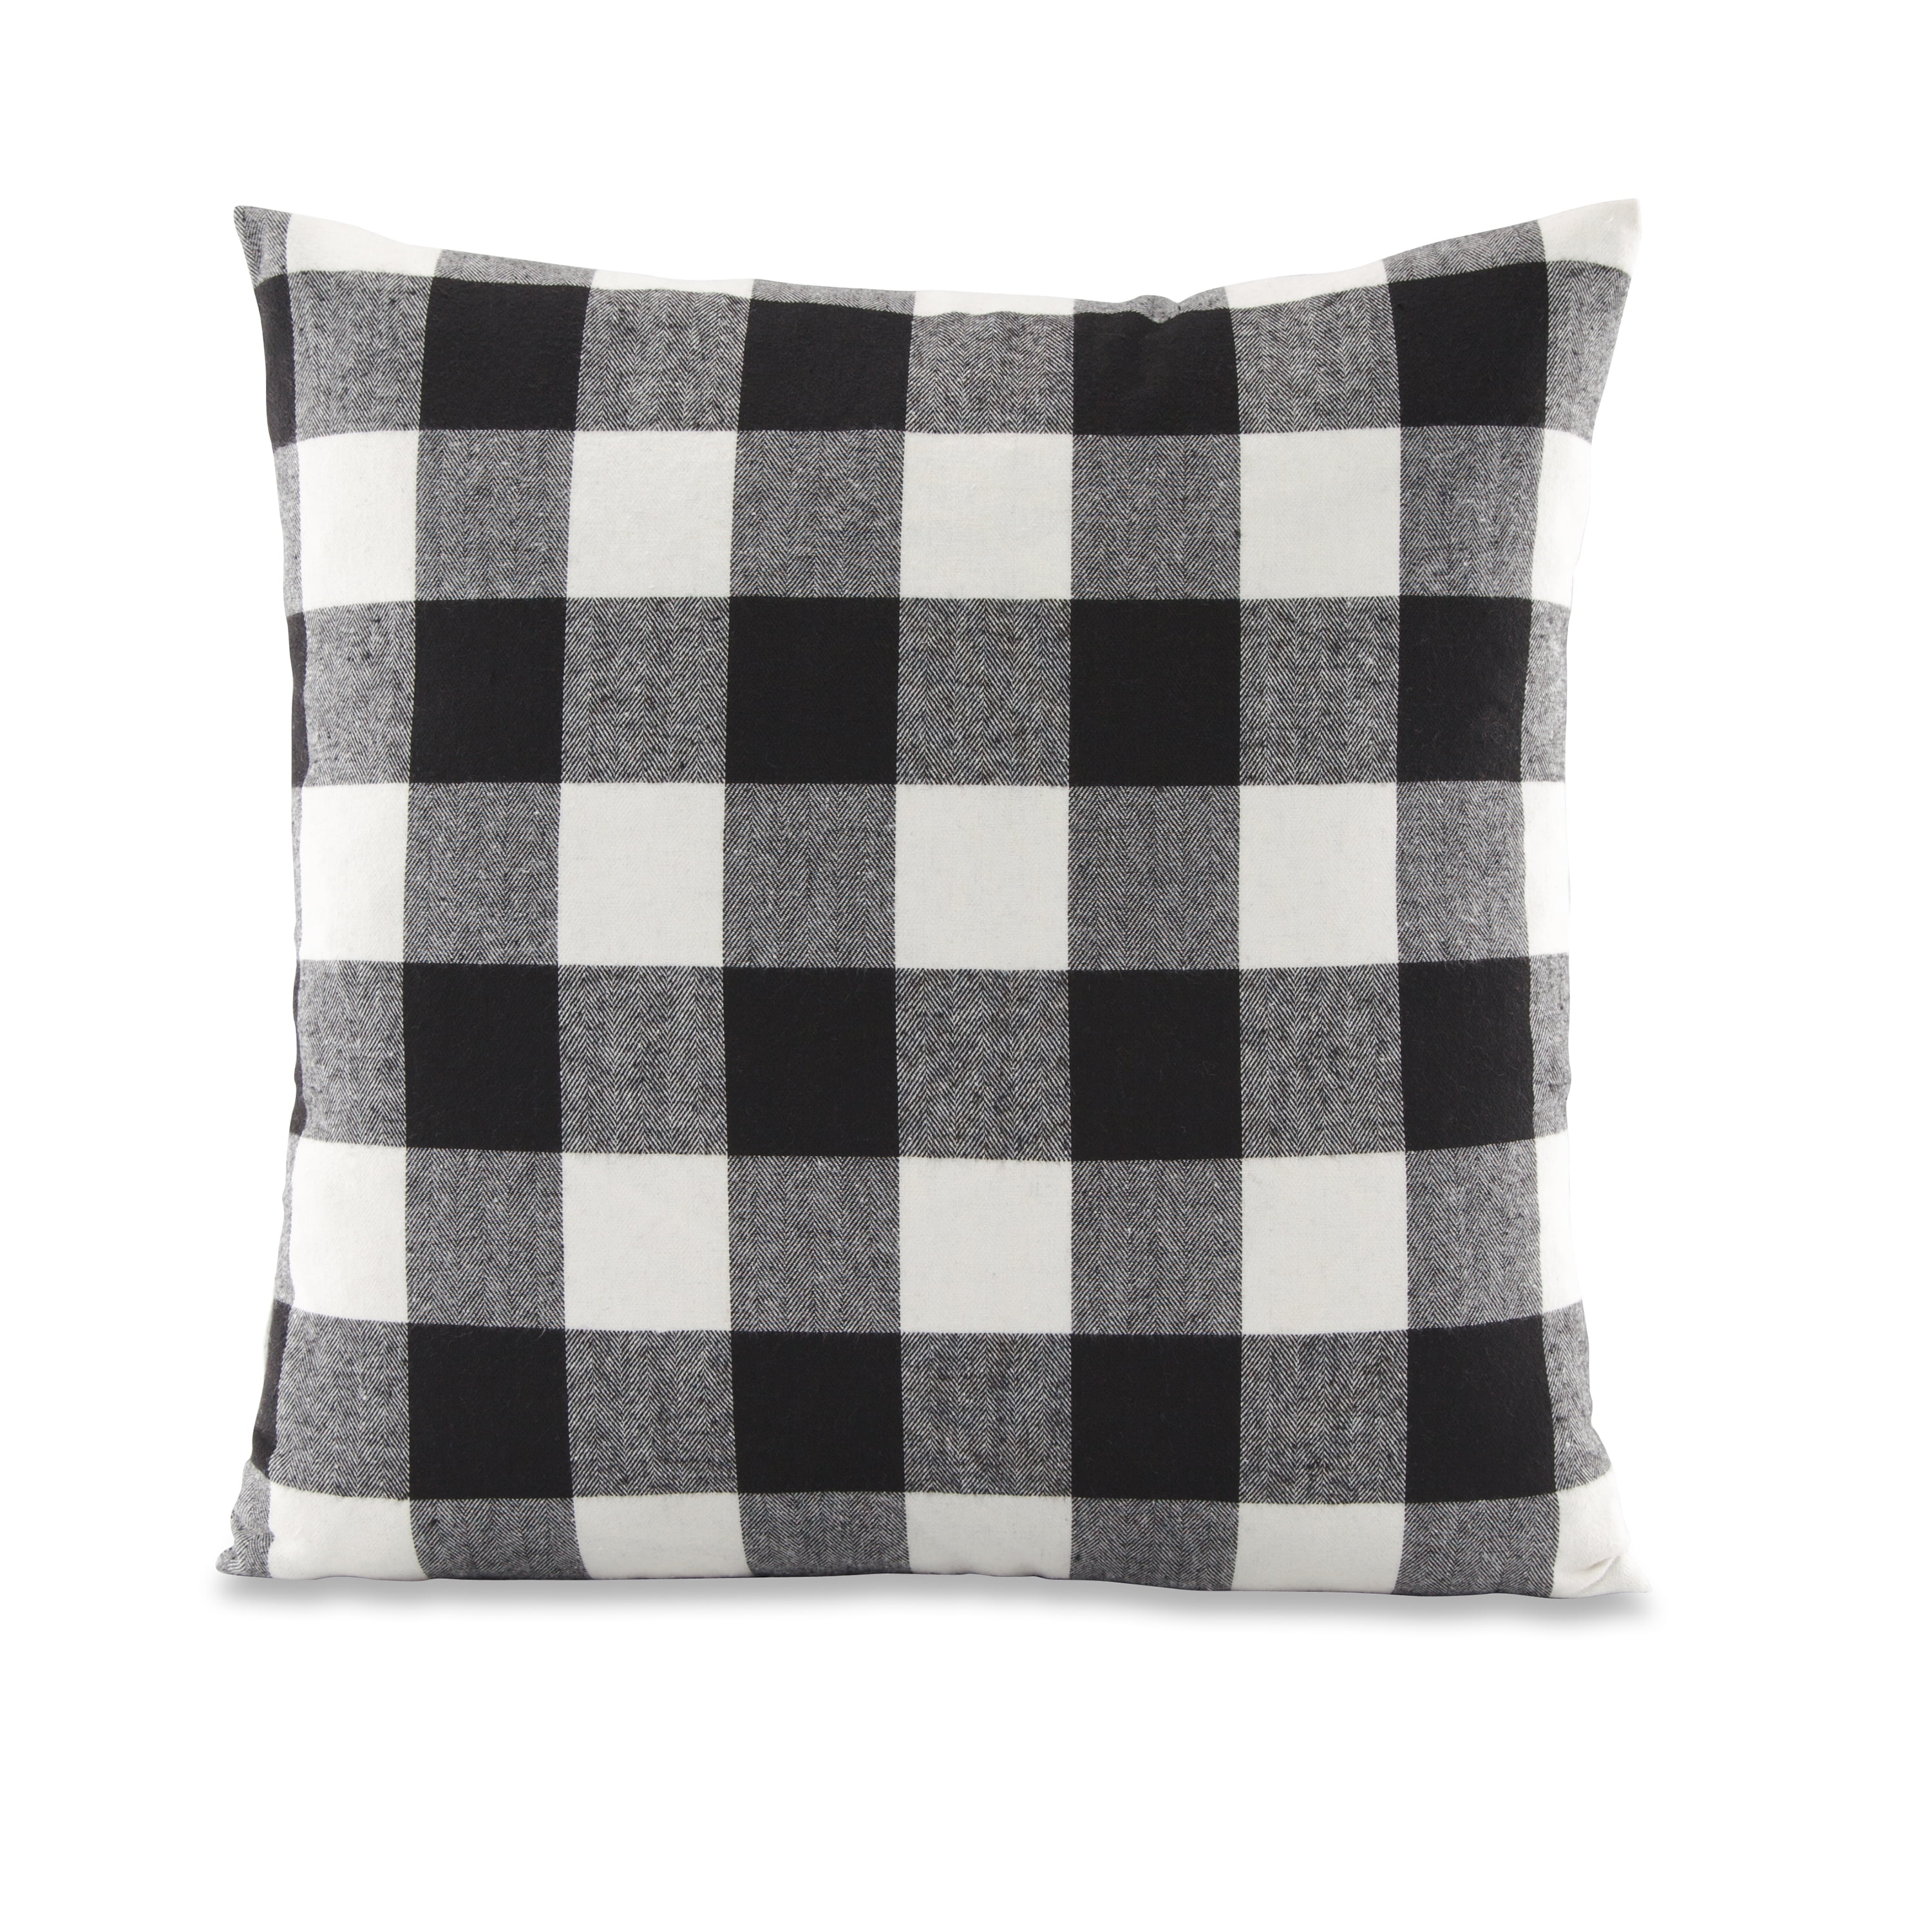 12 x 18 Red/Black Pillow Perfect Buffalo Plaid Decorative Lumbar Pillow